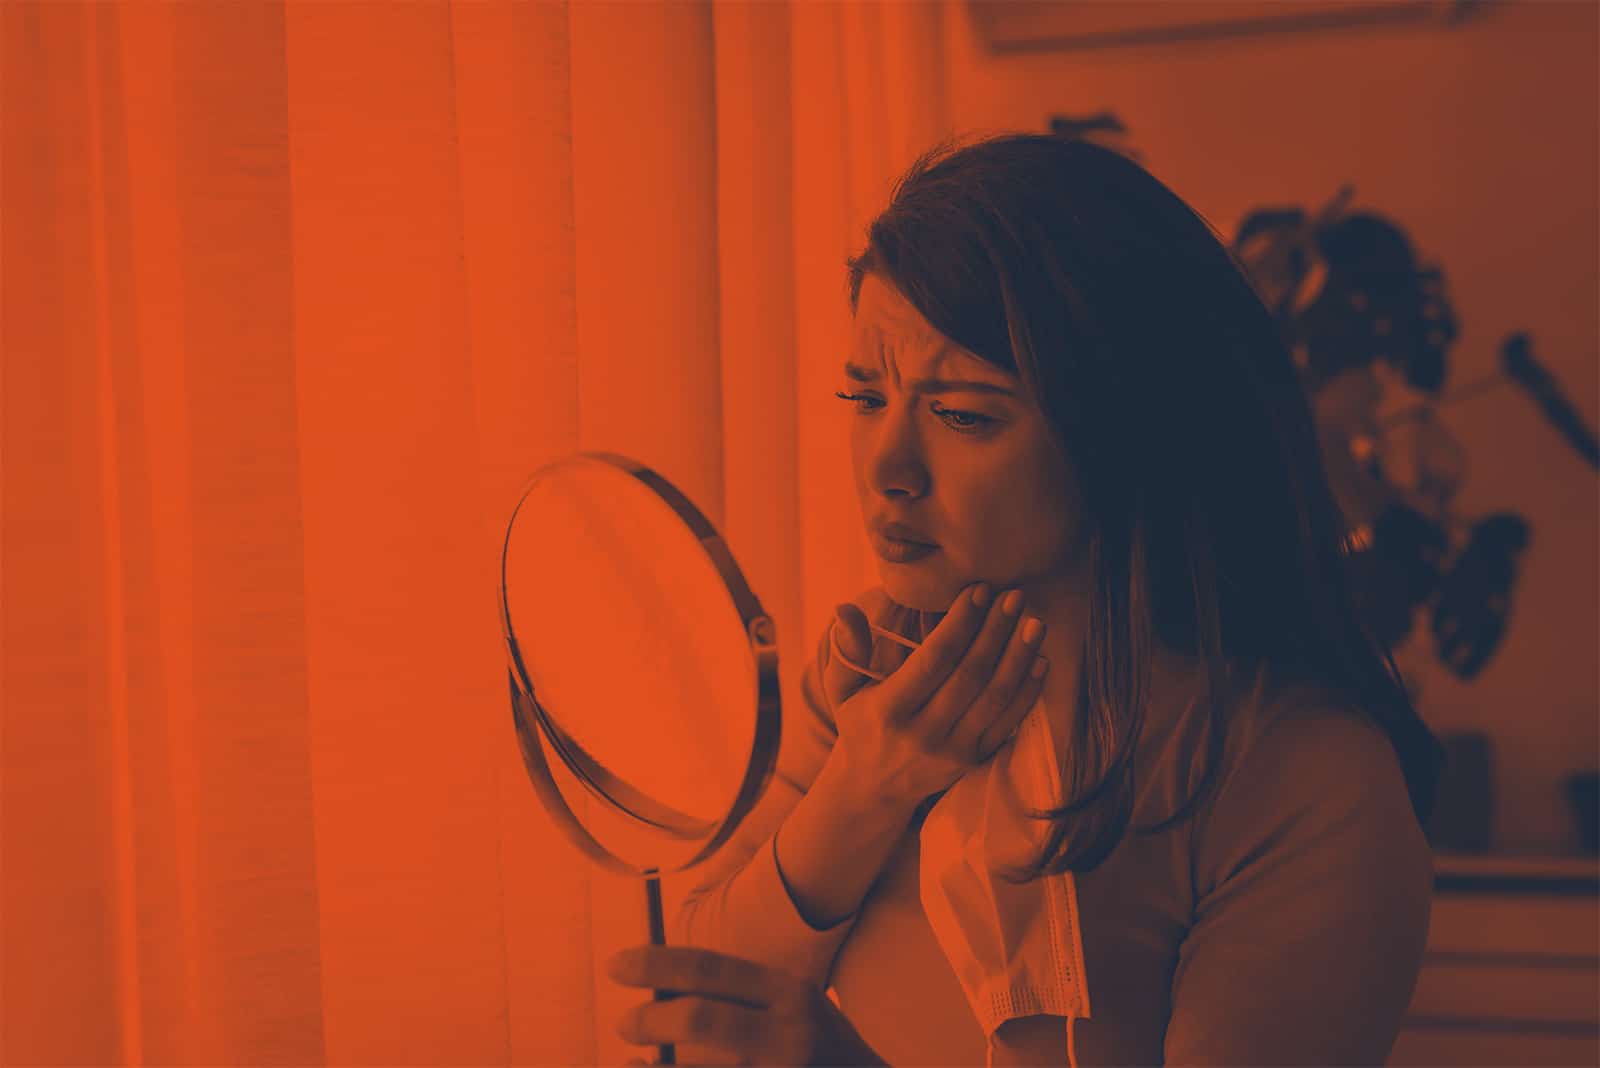 woman looking at mirror